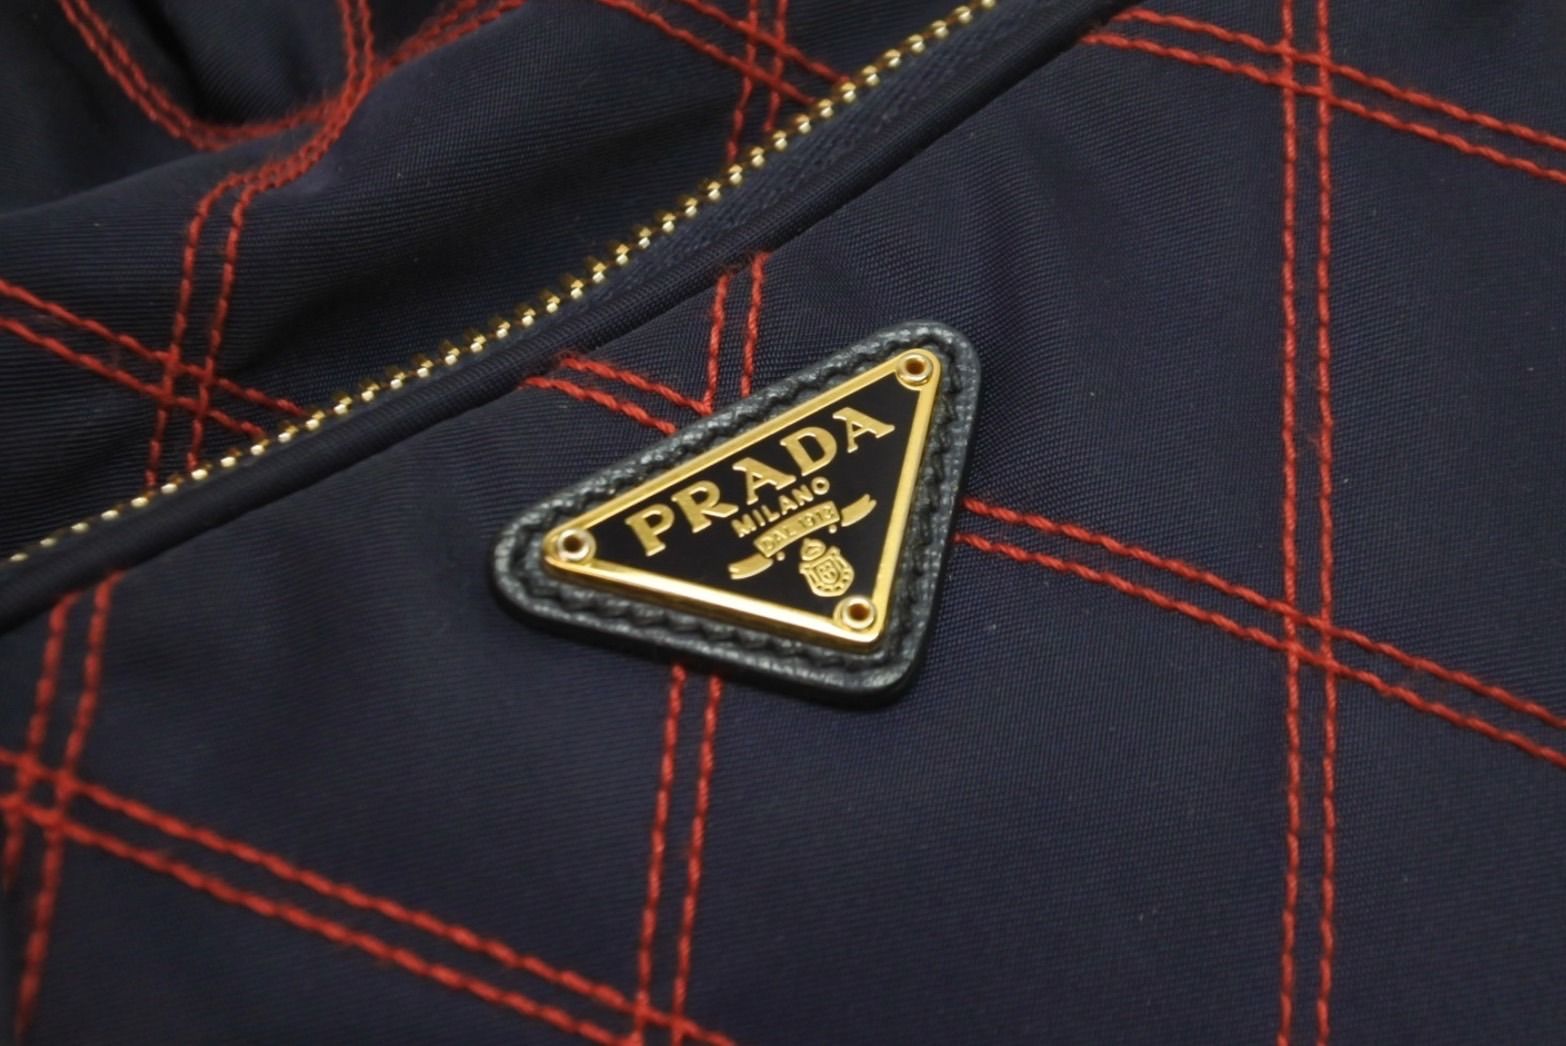 PRADA プラダ ショルダーバッグ 巾着 チェック ナイロン トライアングルロゴ CO190 ゴールド金具 美品  56160